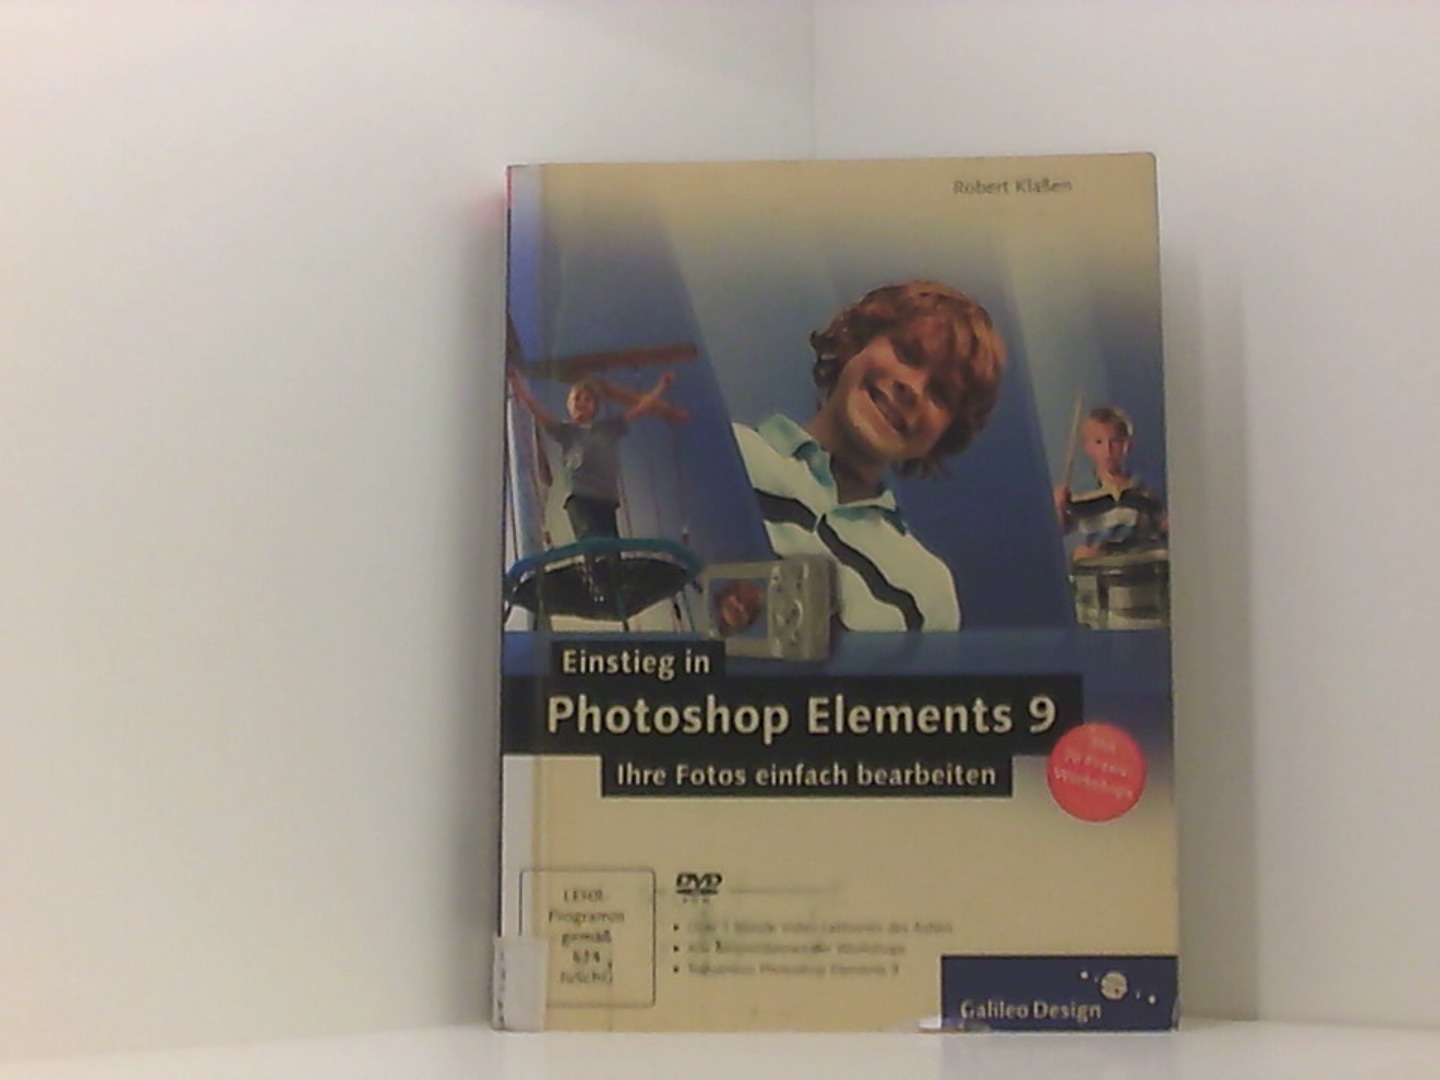 Einstieg in Photoshop Elements 9: Ihre Fotos einfach bearbeiten (Galileo Design)  1 - Klaßen, Robert